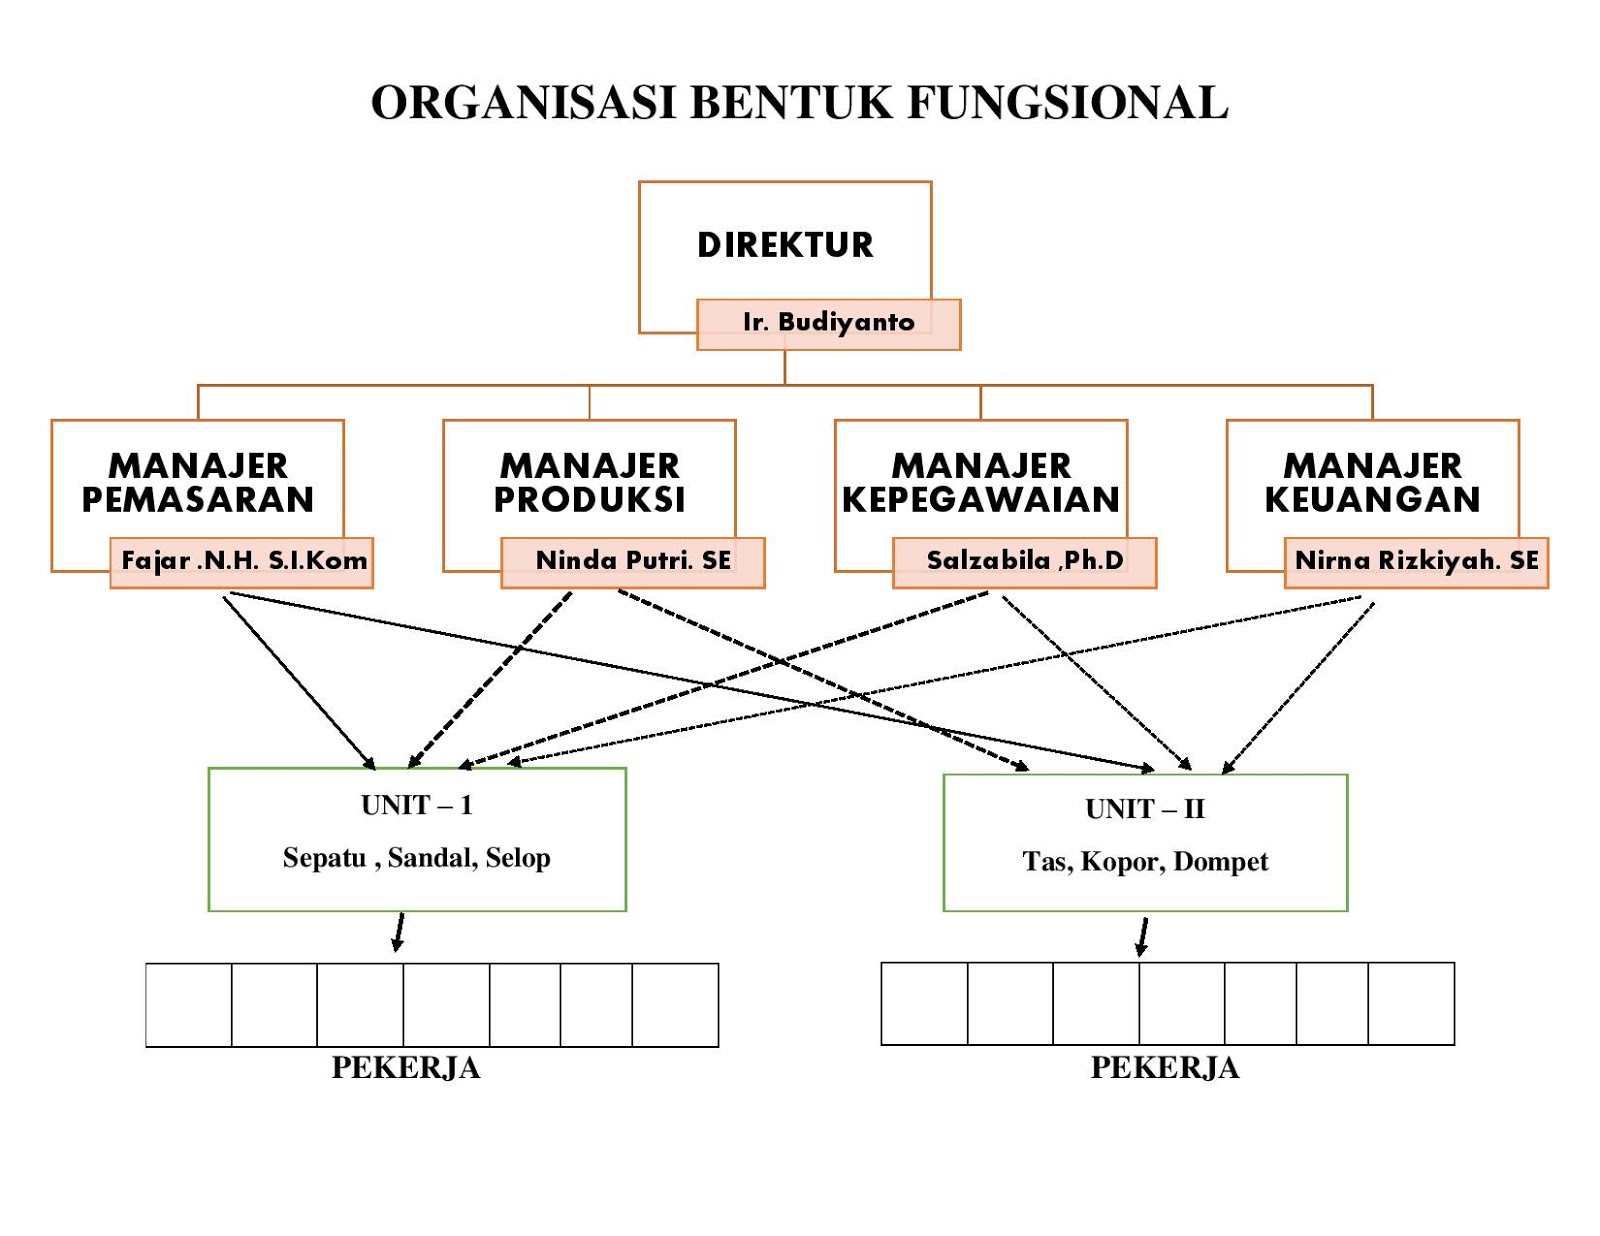  Organisasi  Bentuk  Fungsional GUDANG MAKALAH